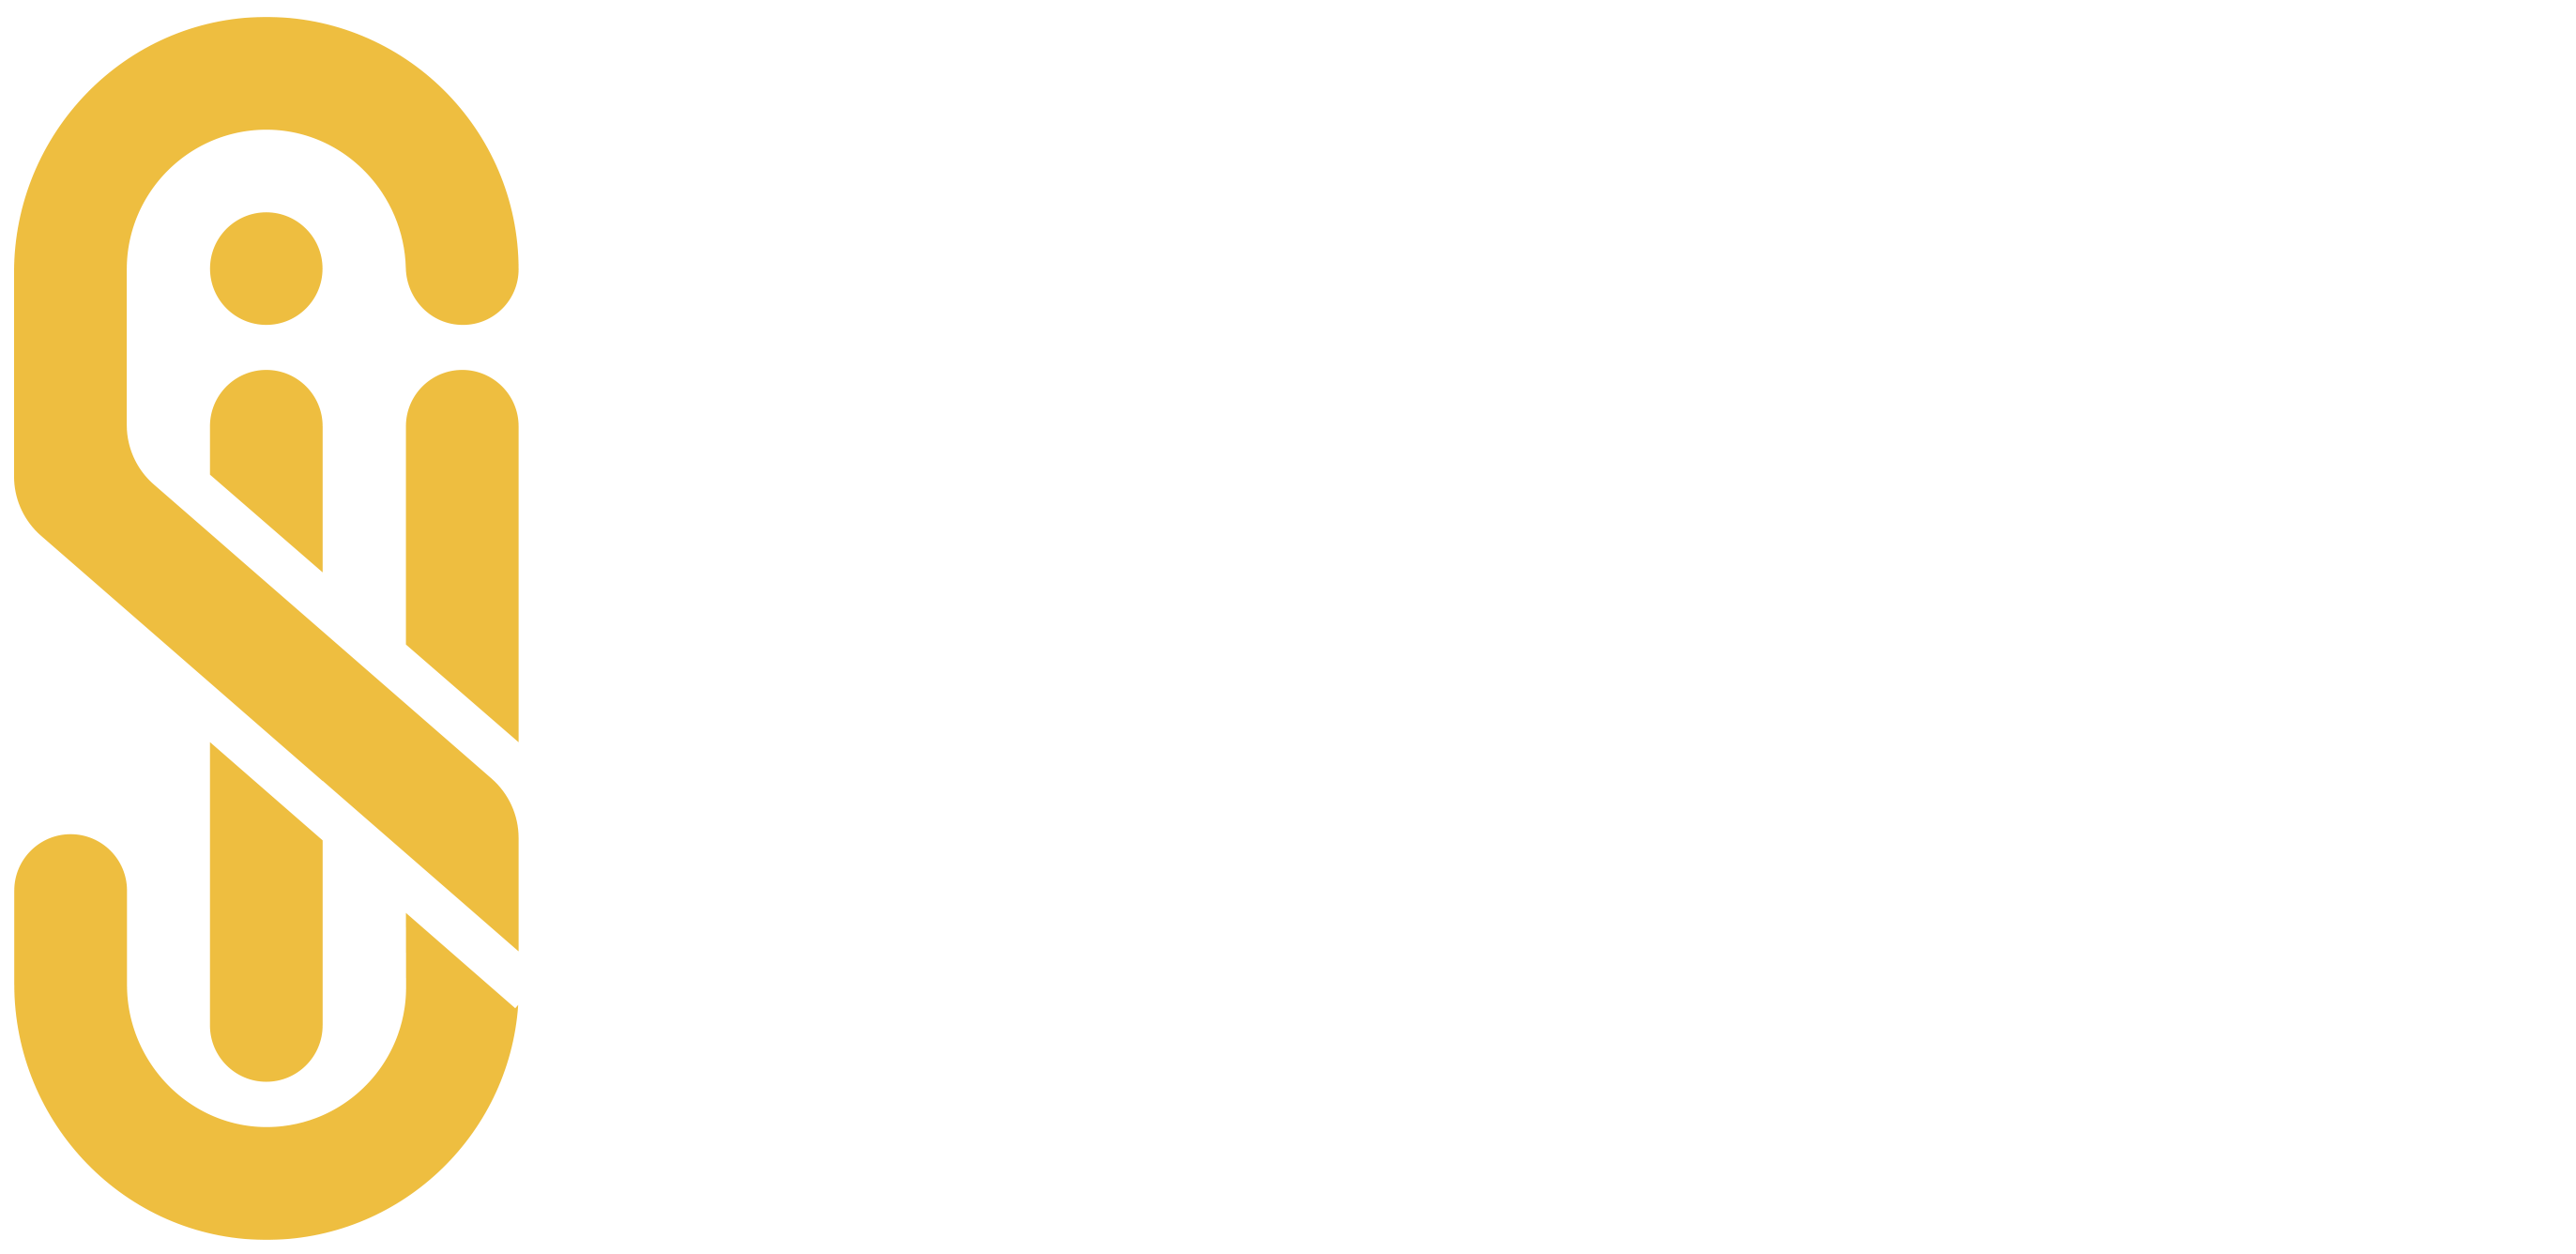 Jadeela